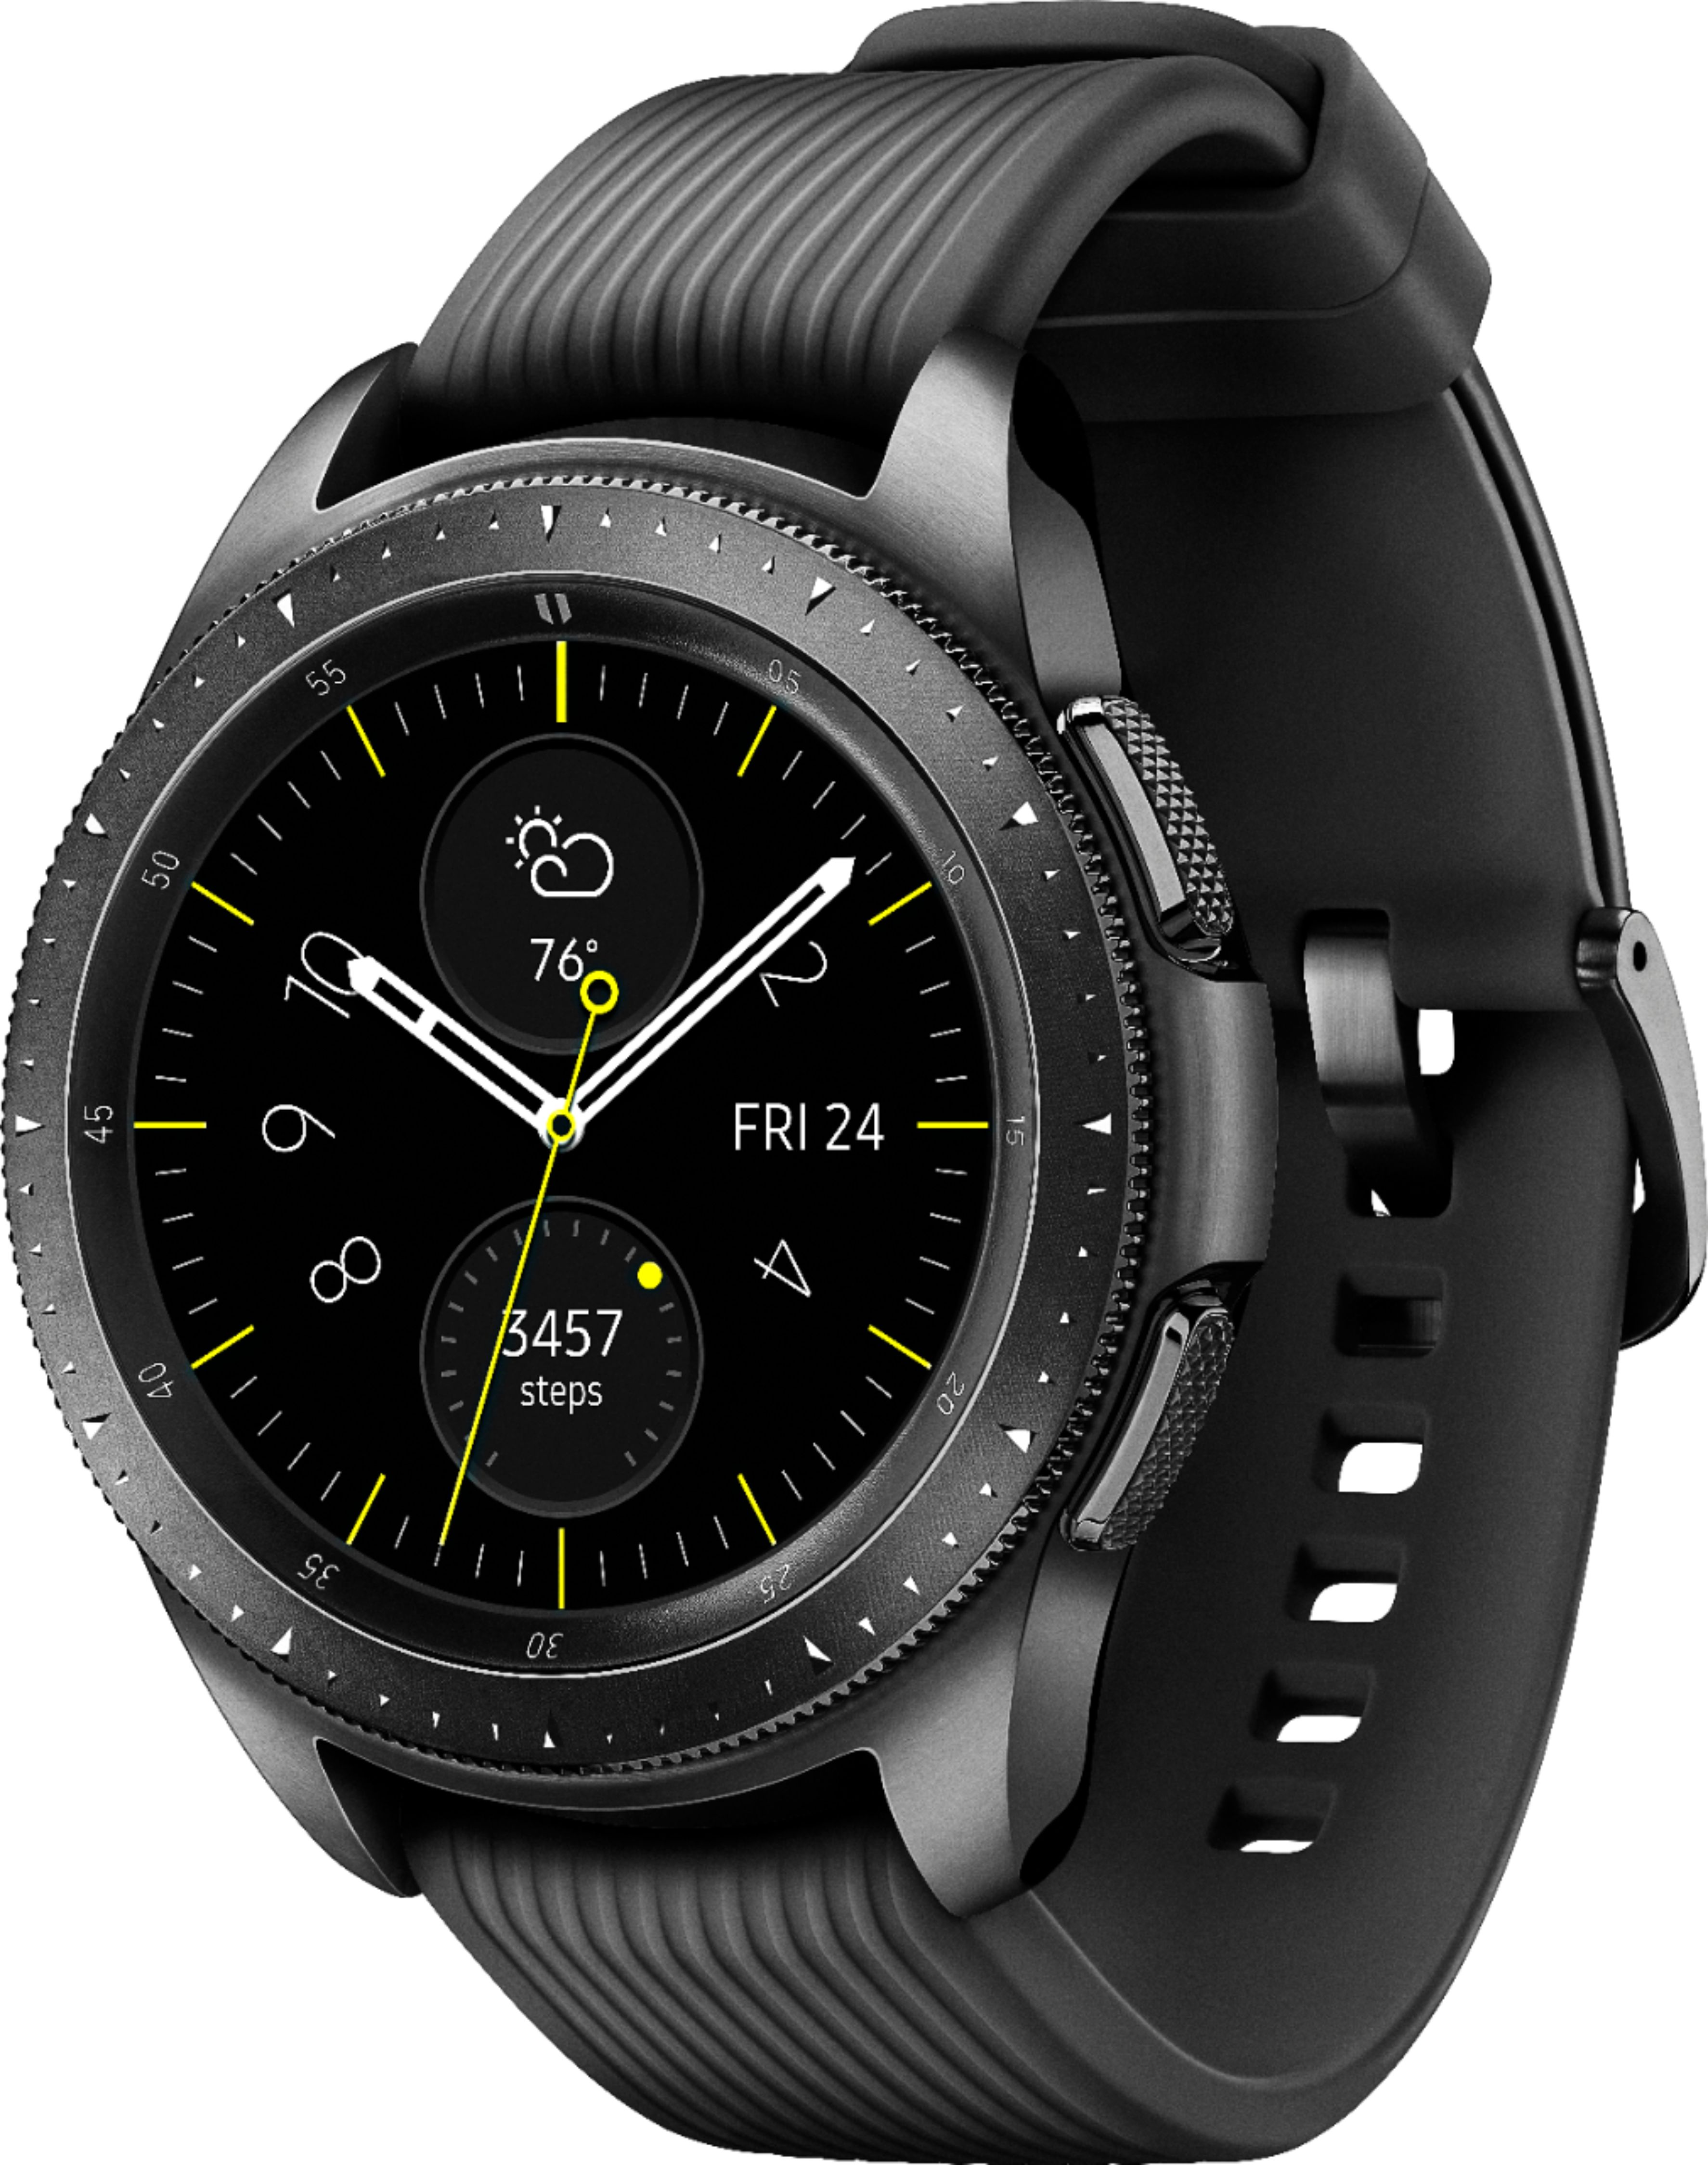 Best Buy Samsung Galaxy Watch Smartwatch 42mm Stainless Steel LTE 